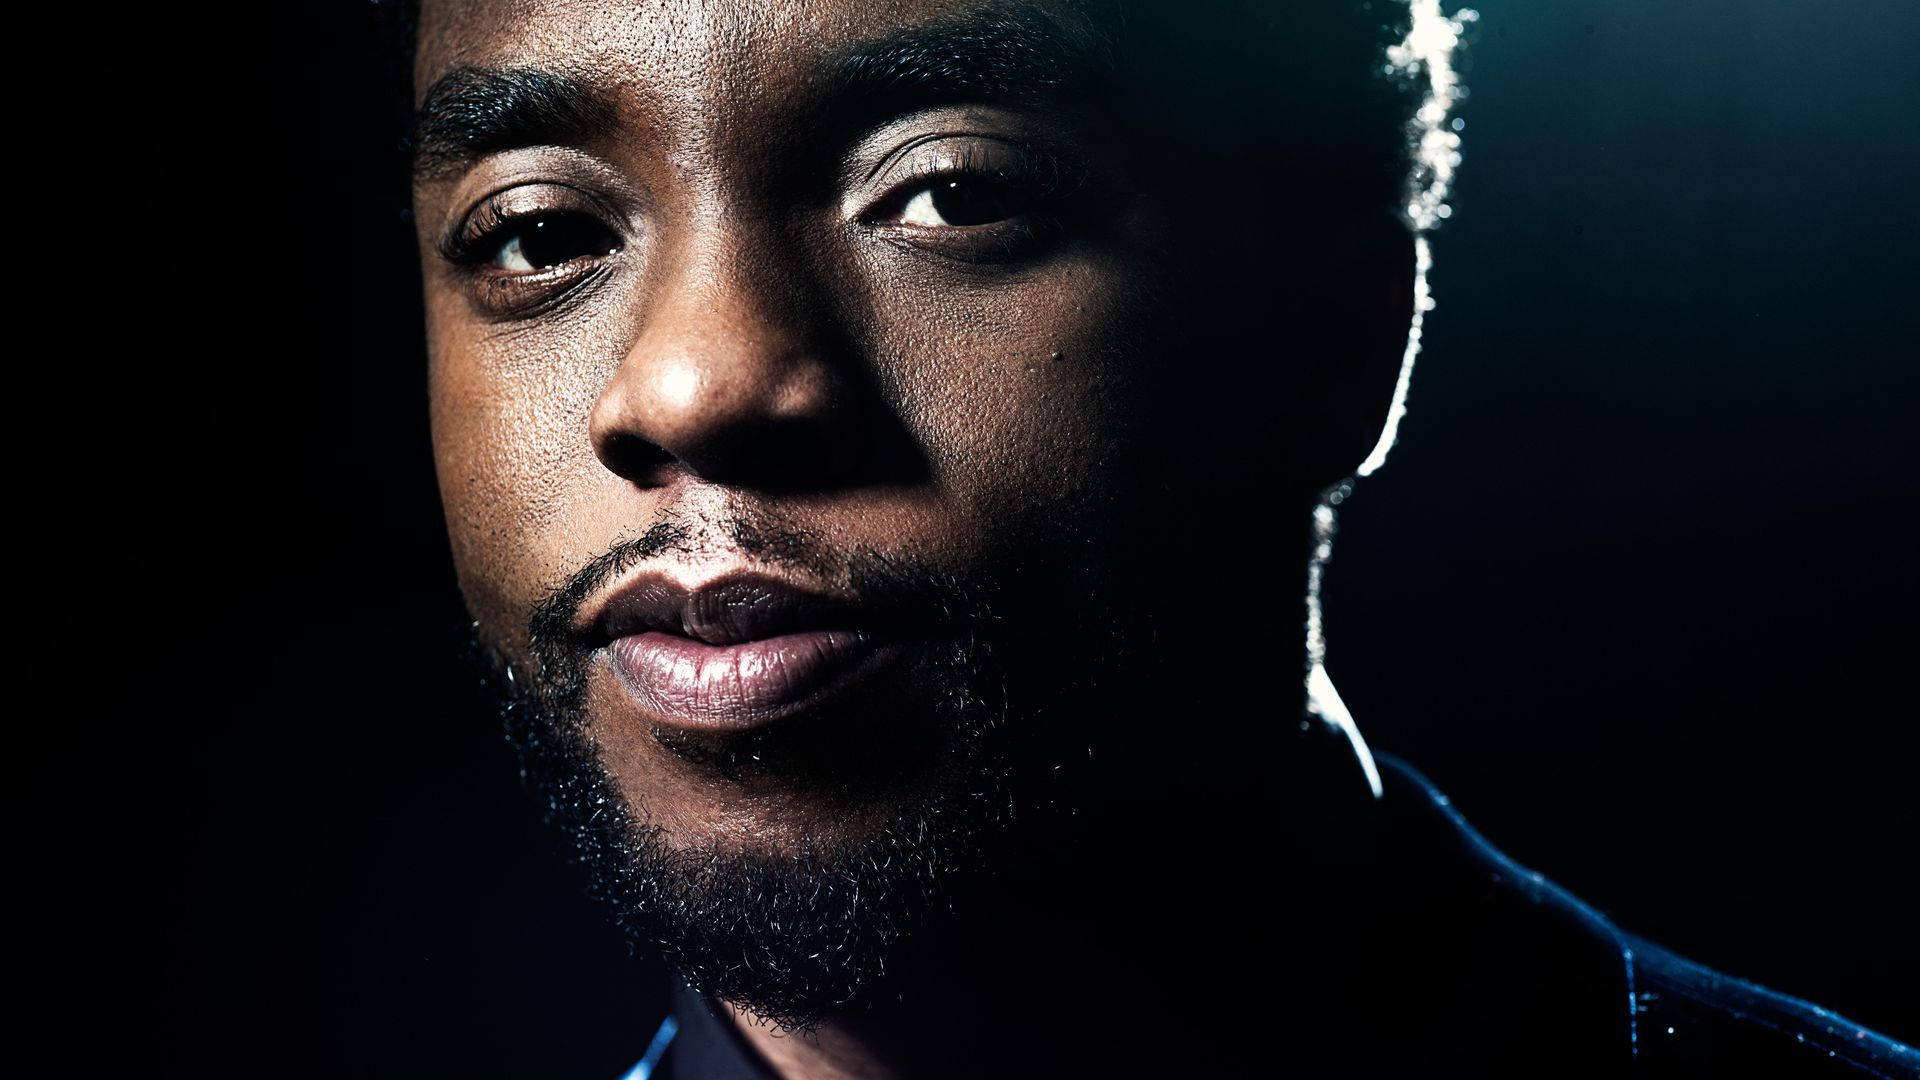 Chadwick Boseman Detailed Profile Photograph Background